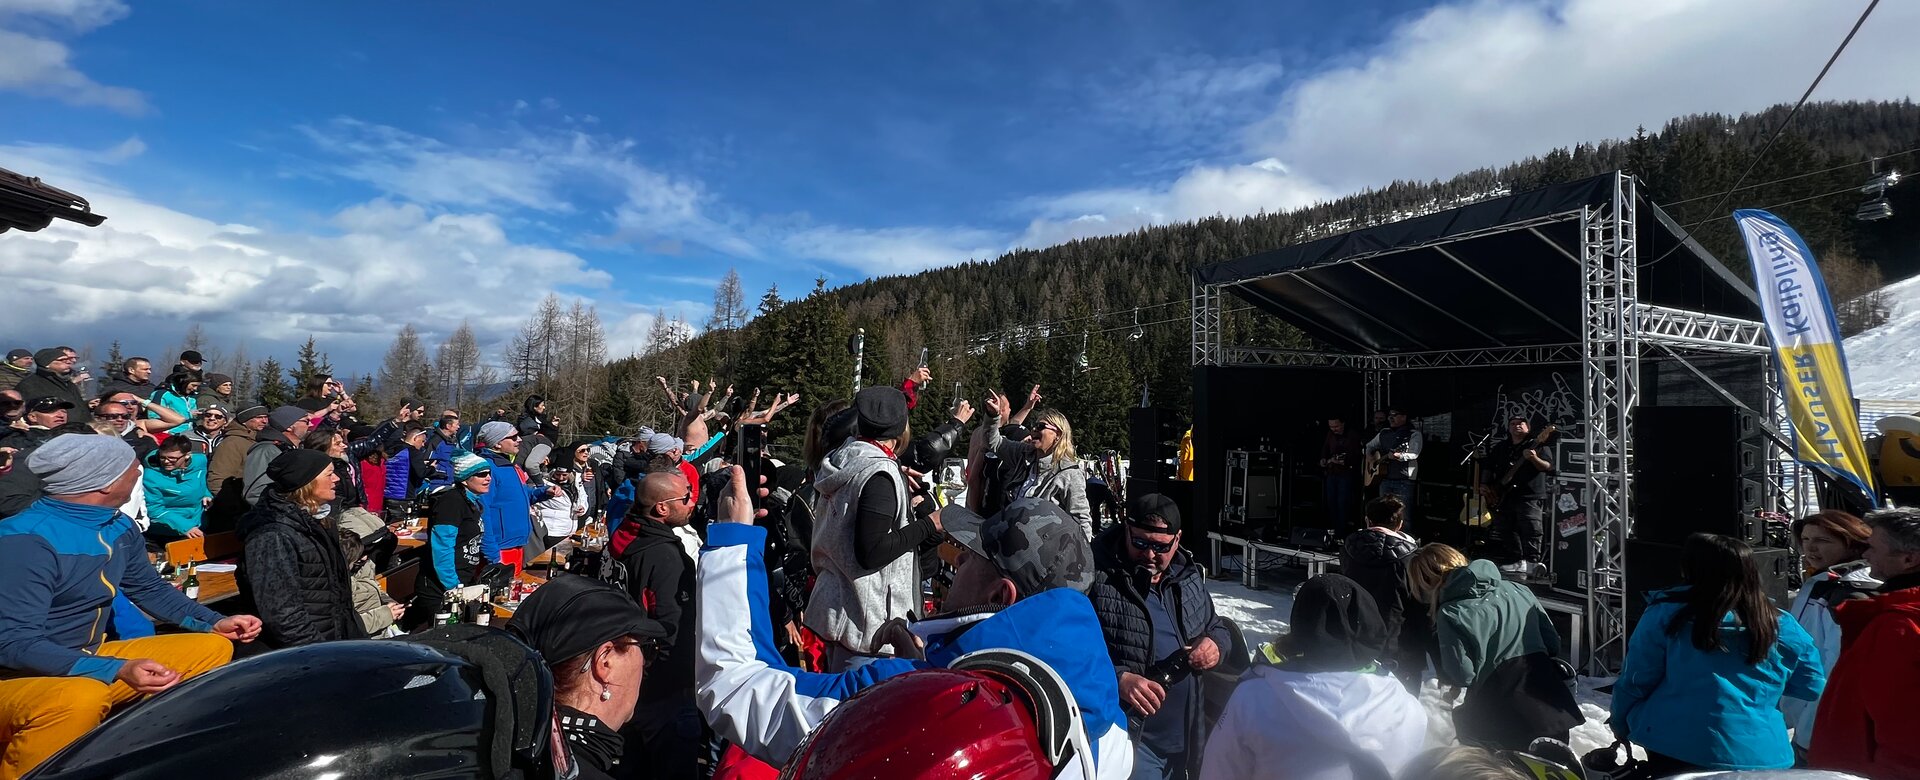 Viele Personen in Skiausrüctung stehen vor einer kleinen Bühne auf der Musiker spielen | © Hauser Kaibling